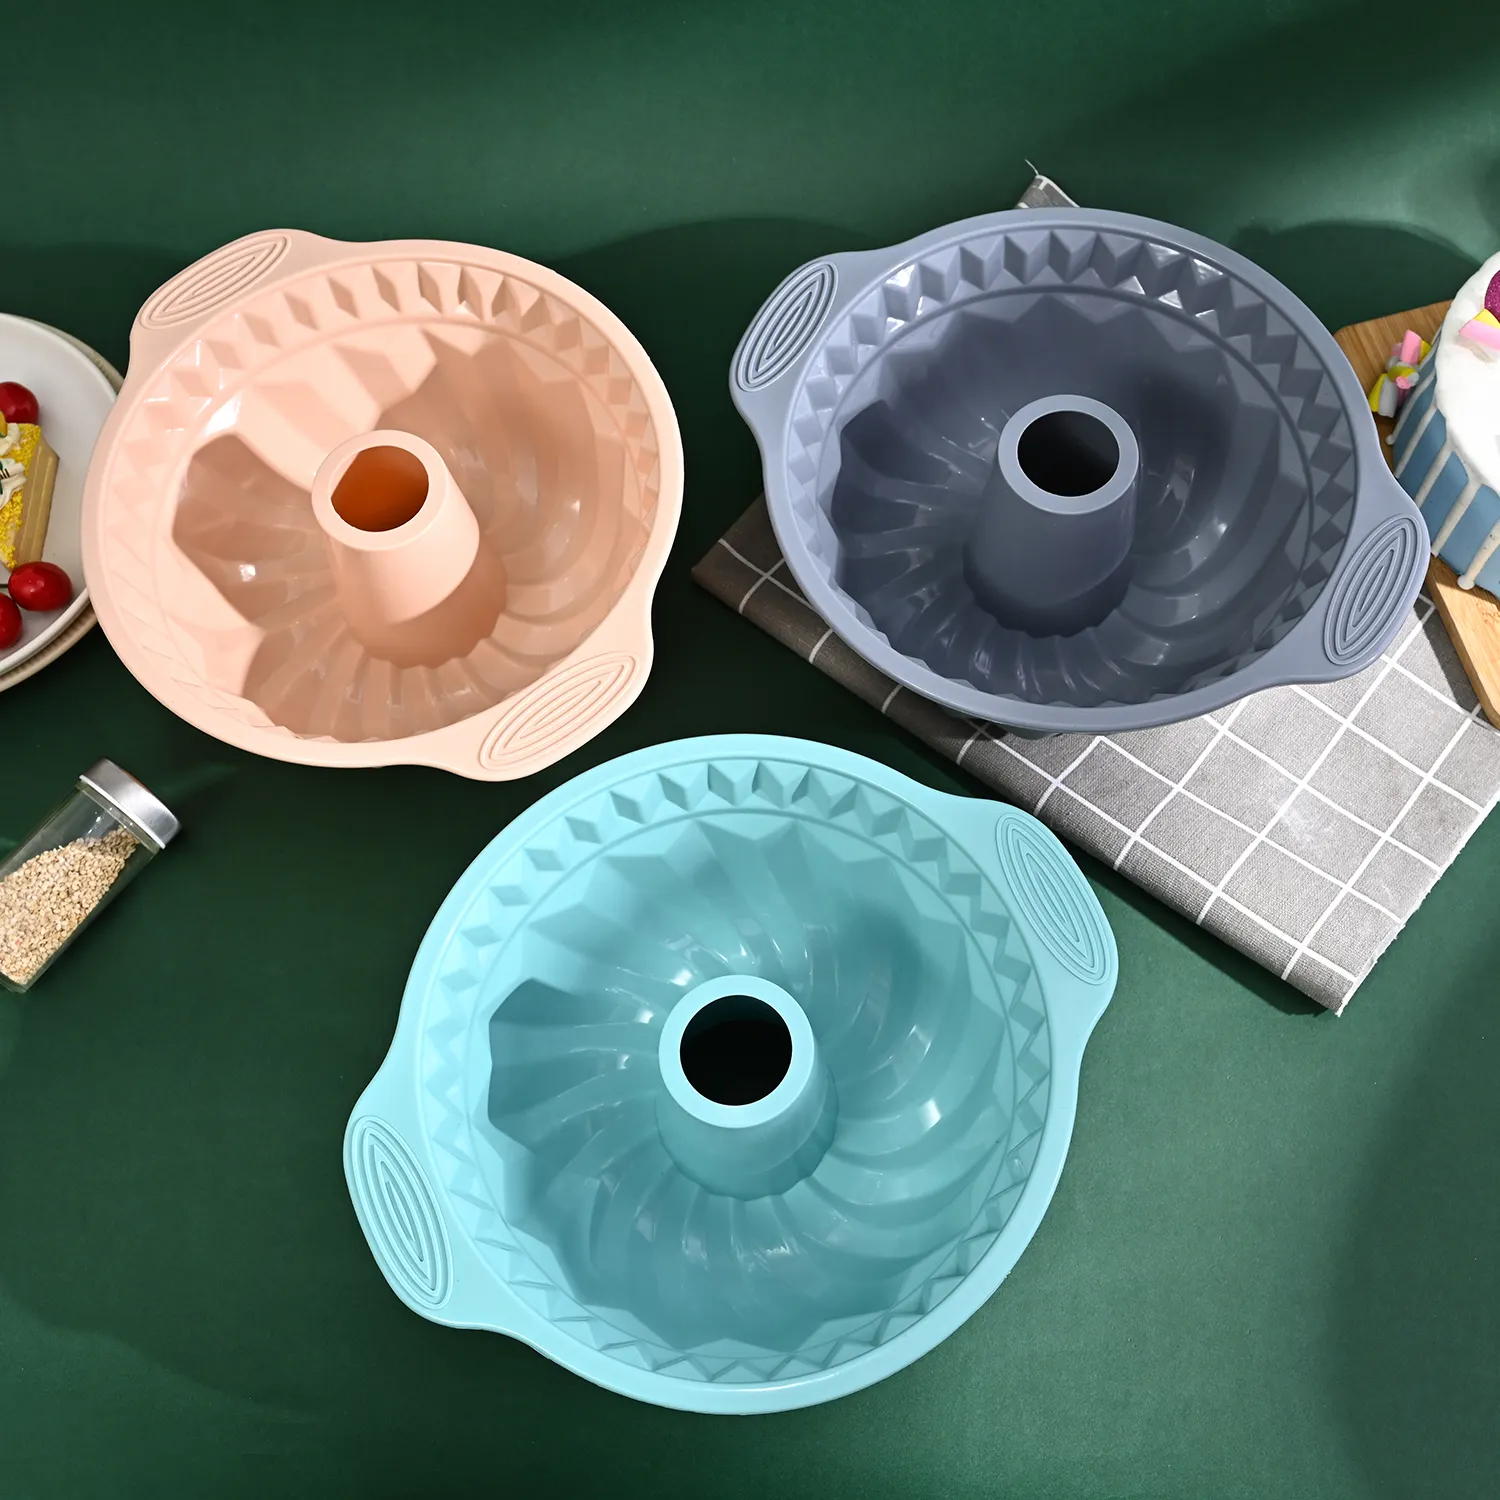 大型ラウンドリサイクル可能なシリコンケーキ型パンベーキングスパイラル型耐熱皿家族のためのサバリンケーキシリコン型